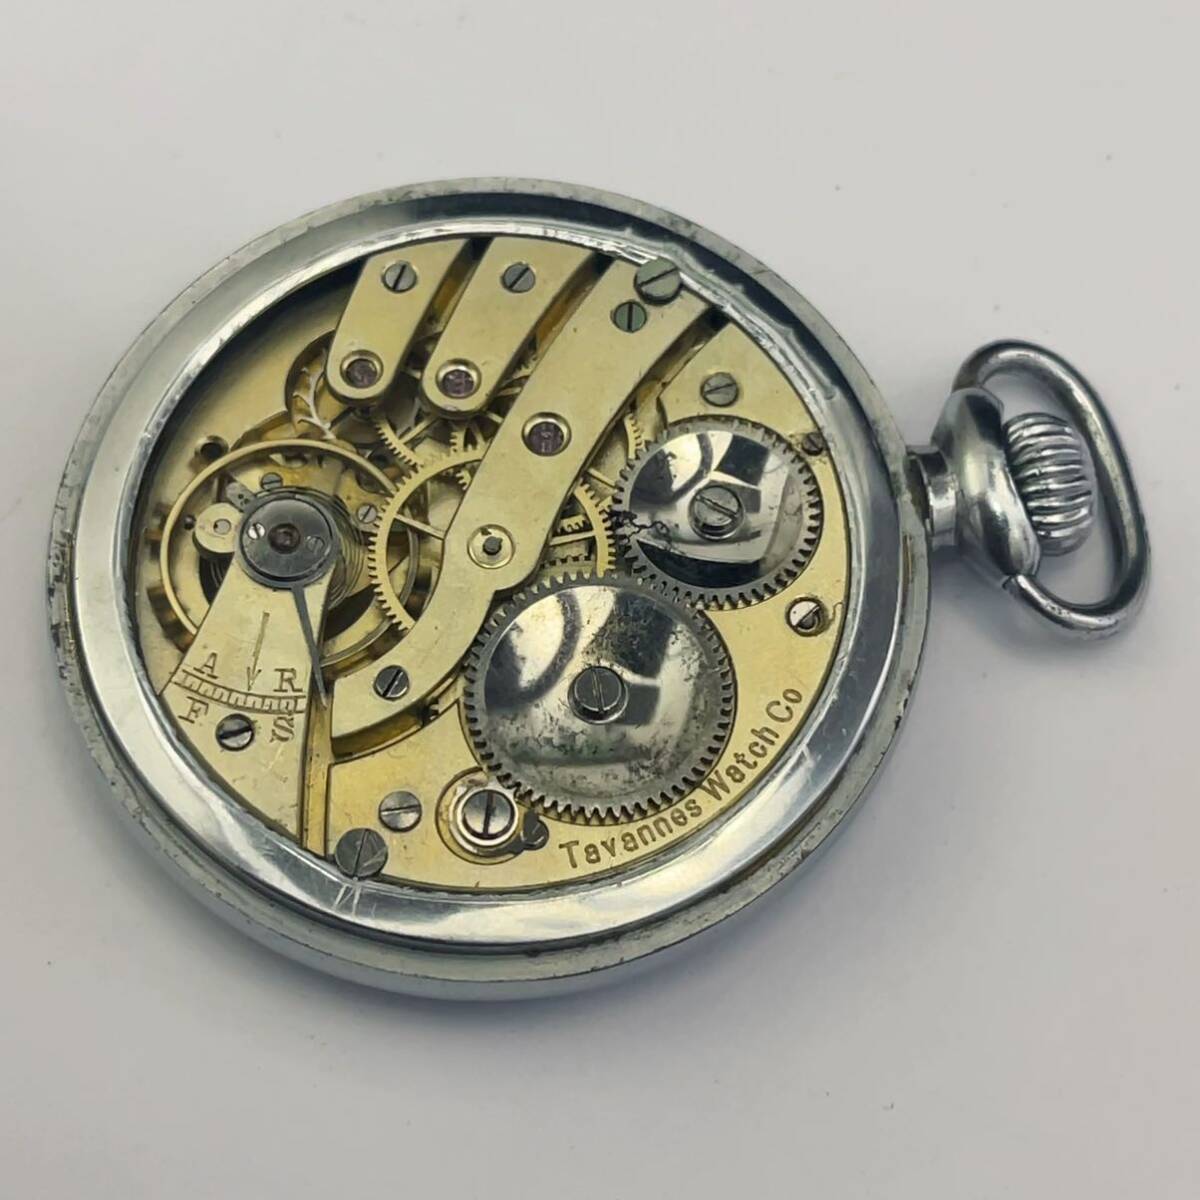 アンティーク TAVANNES WATCH 懐中時計 スモセコ 機械式 手巻き 稼働品 の画像3